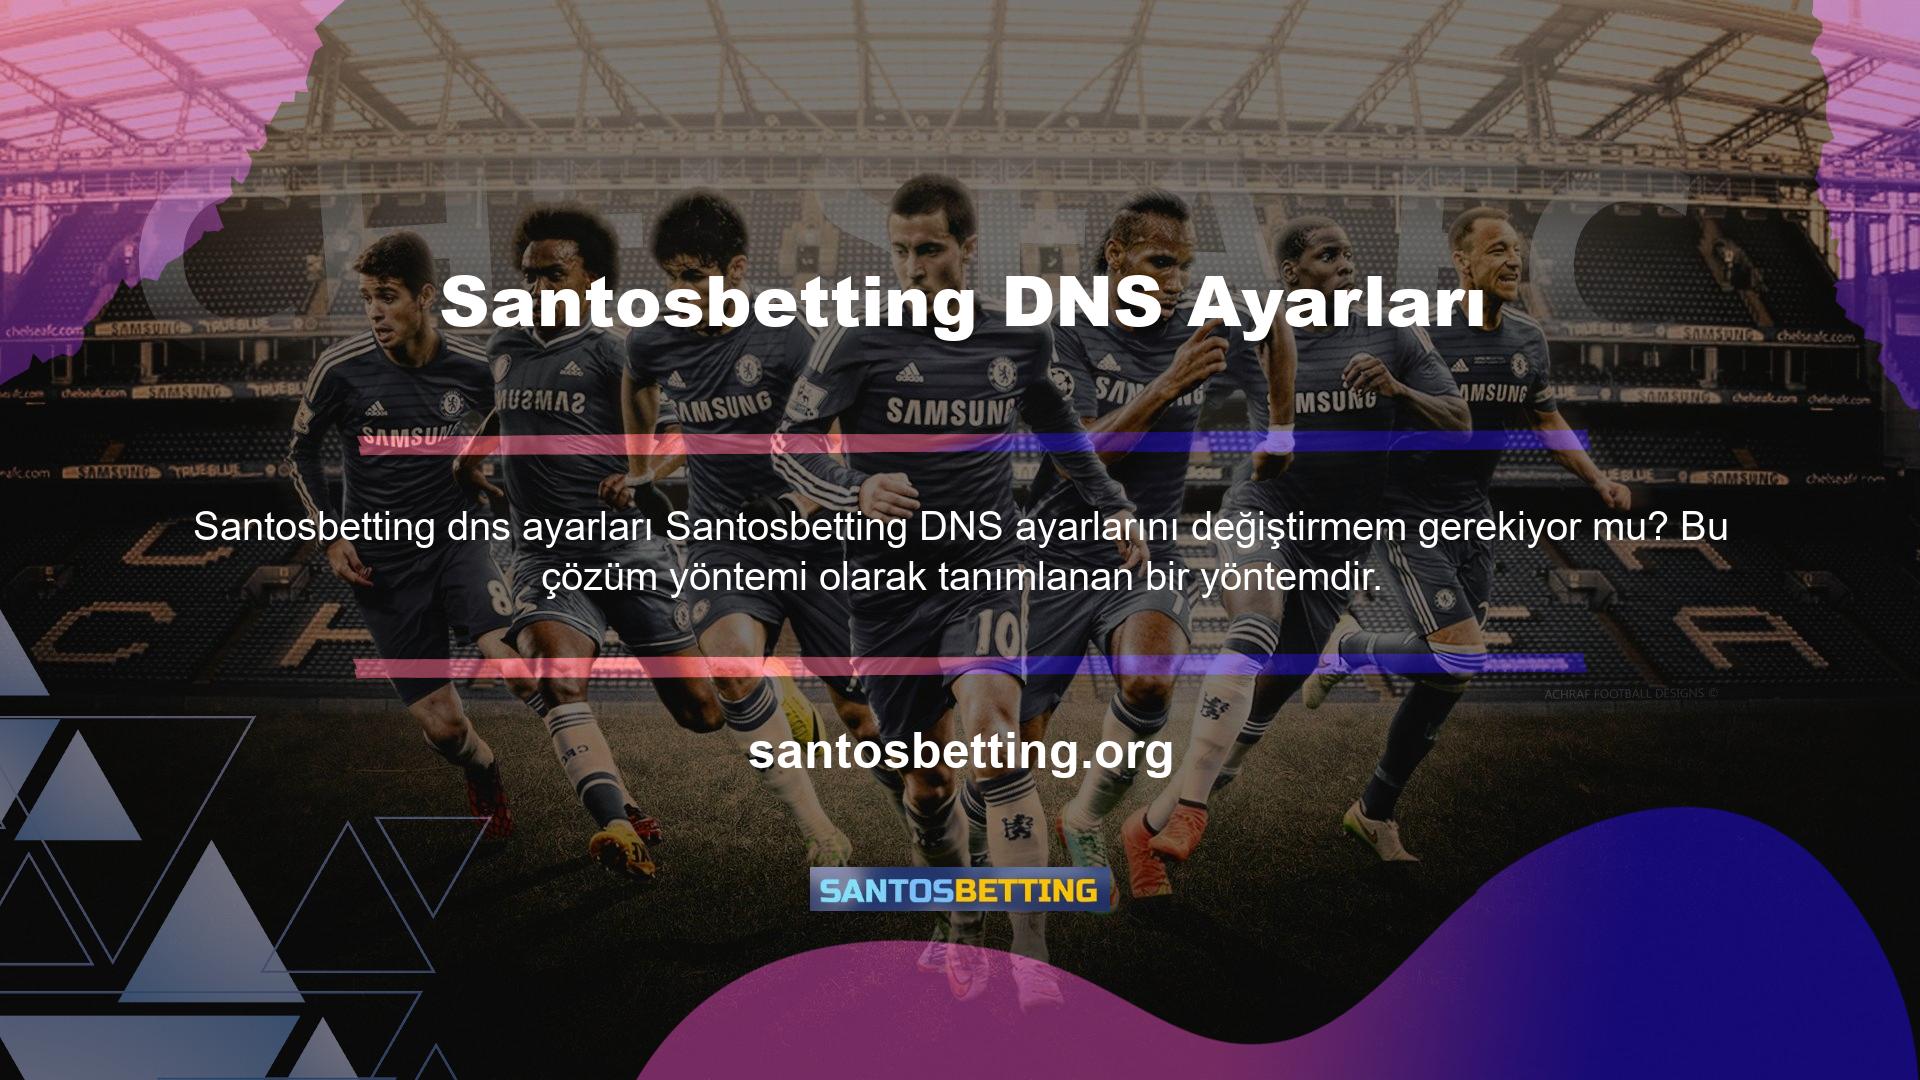 Santosbetting DNS ayarlarını değiştirmeniz gerekiyor mu, bunun zorunlu bir uygulama olmadığını bilmelisiniz